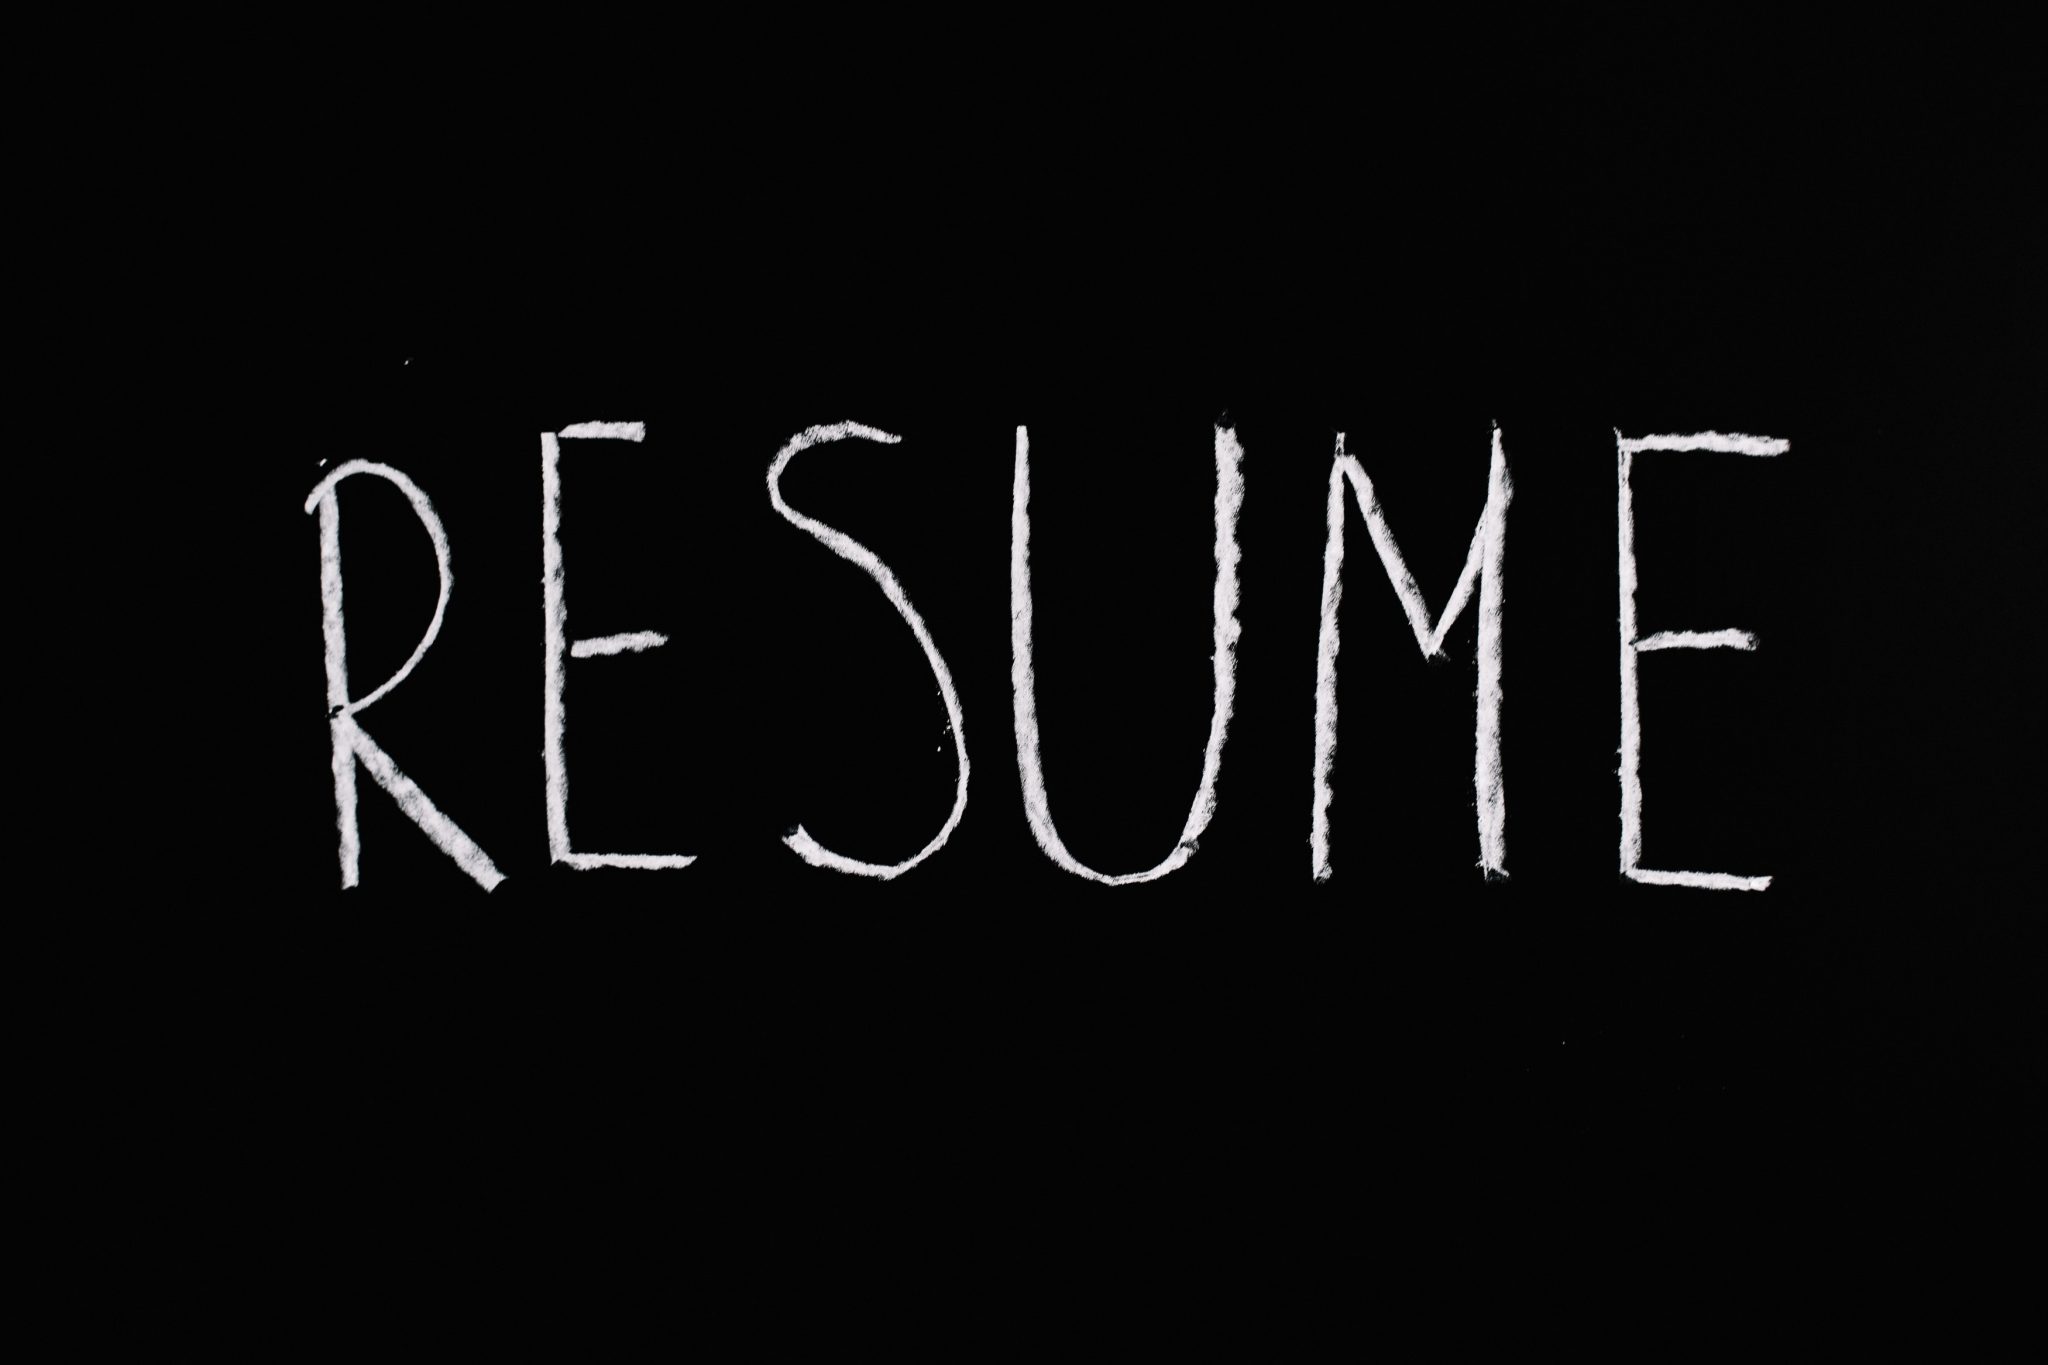 Resume written in chalk on blackboard